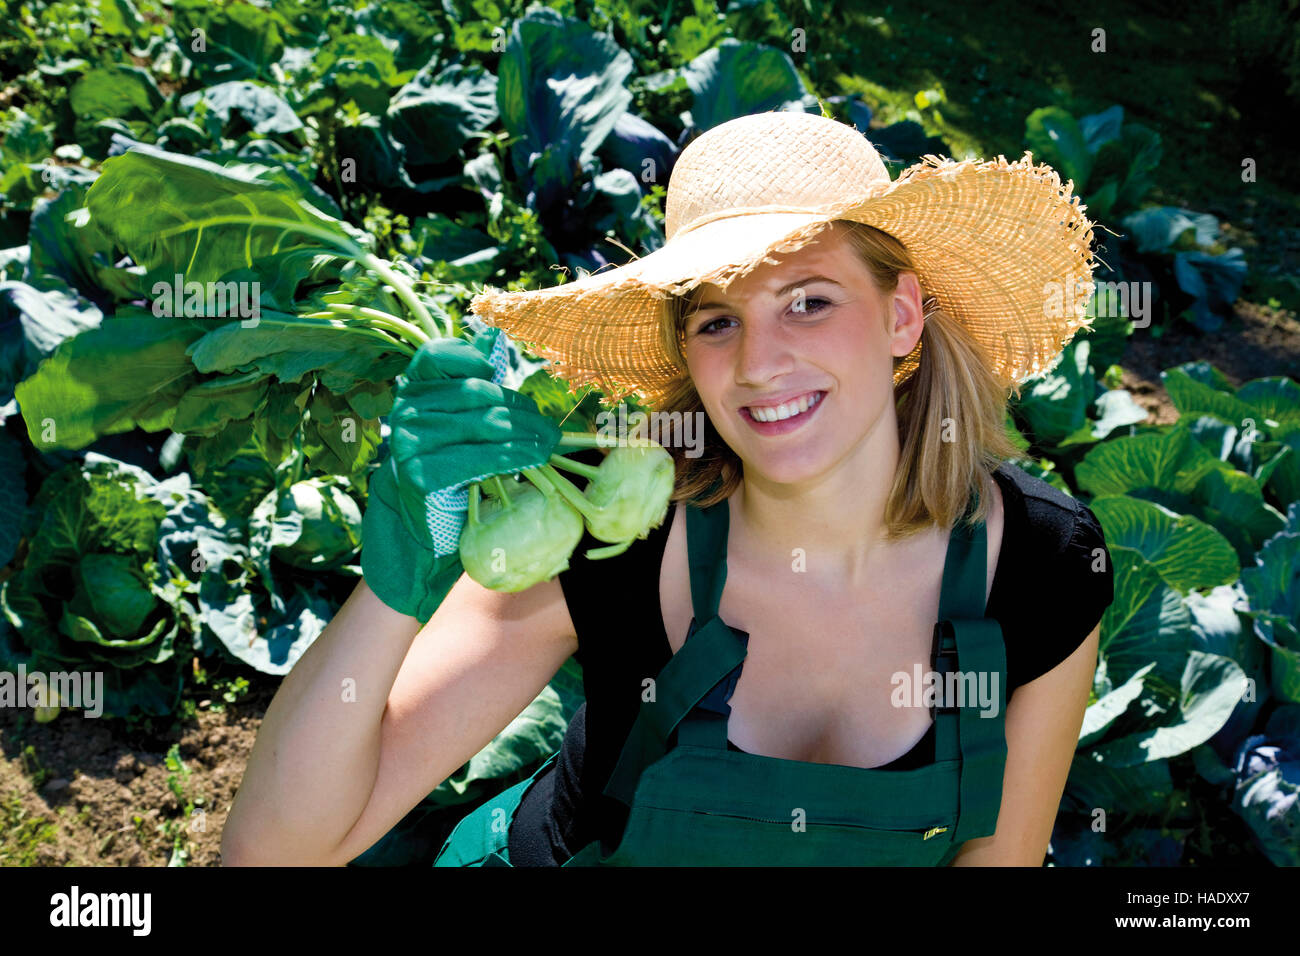 Female gardener with turnip cabbage Stock Photo